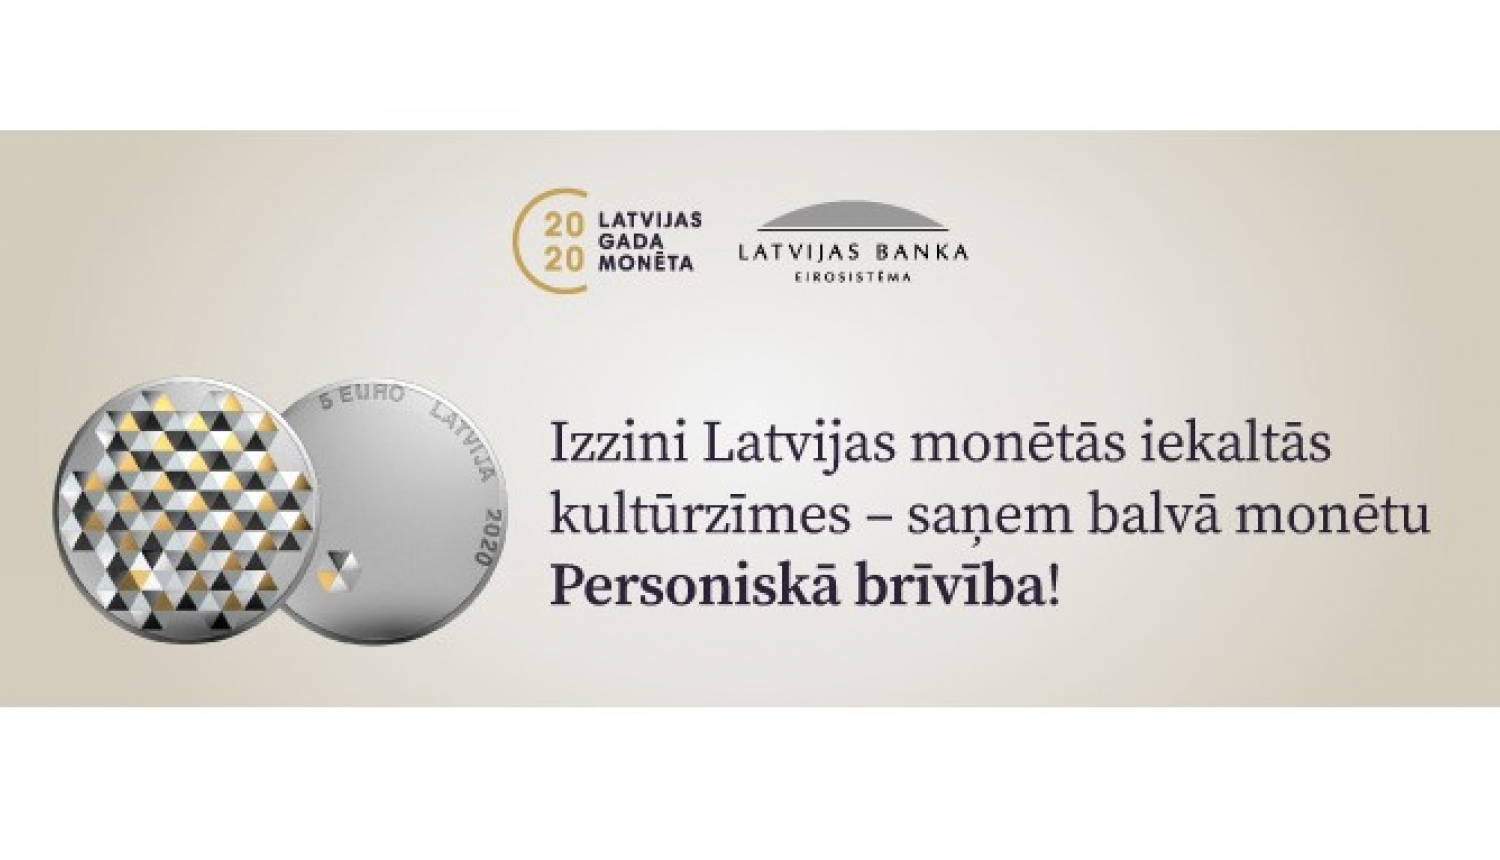 Latvijas Bankas 2020. gadā izlaistās kolekcijas monētas - reklāmas banneris